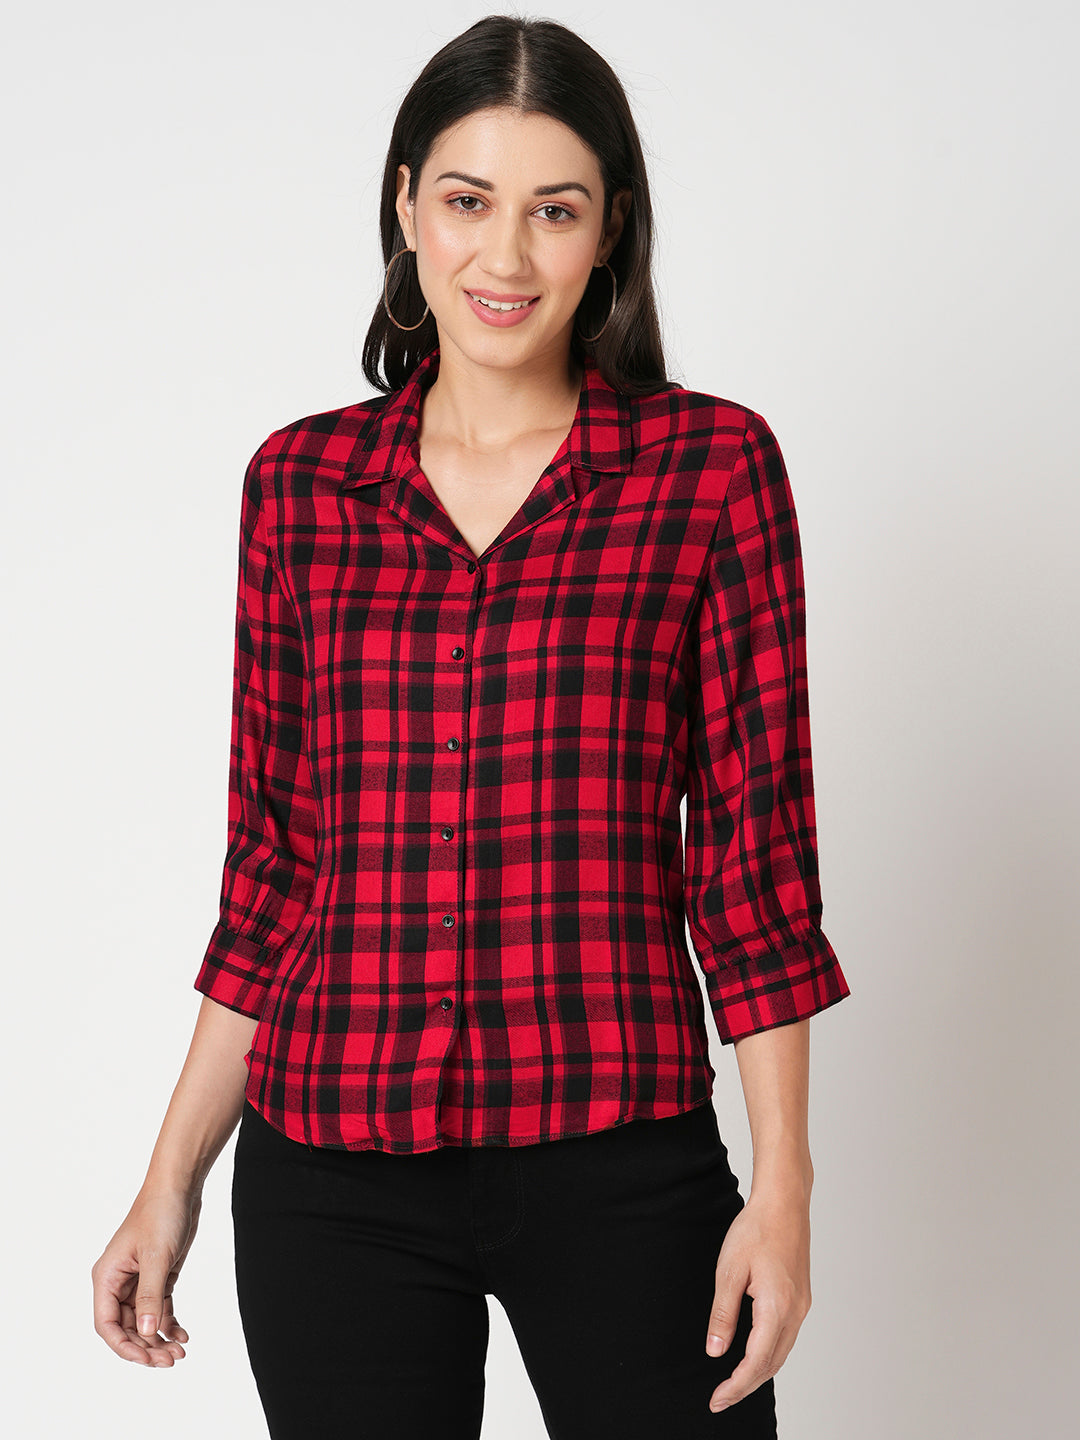 Women Slim Fit Red-Black Checks Shirt